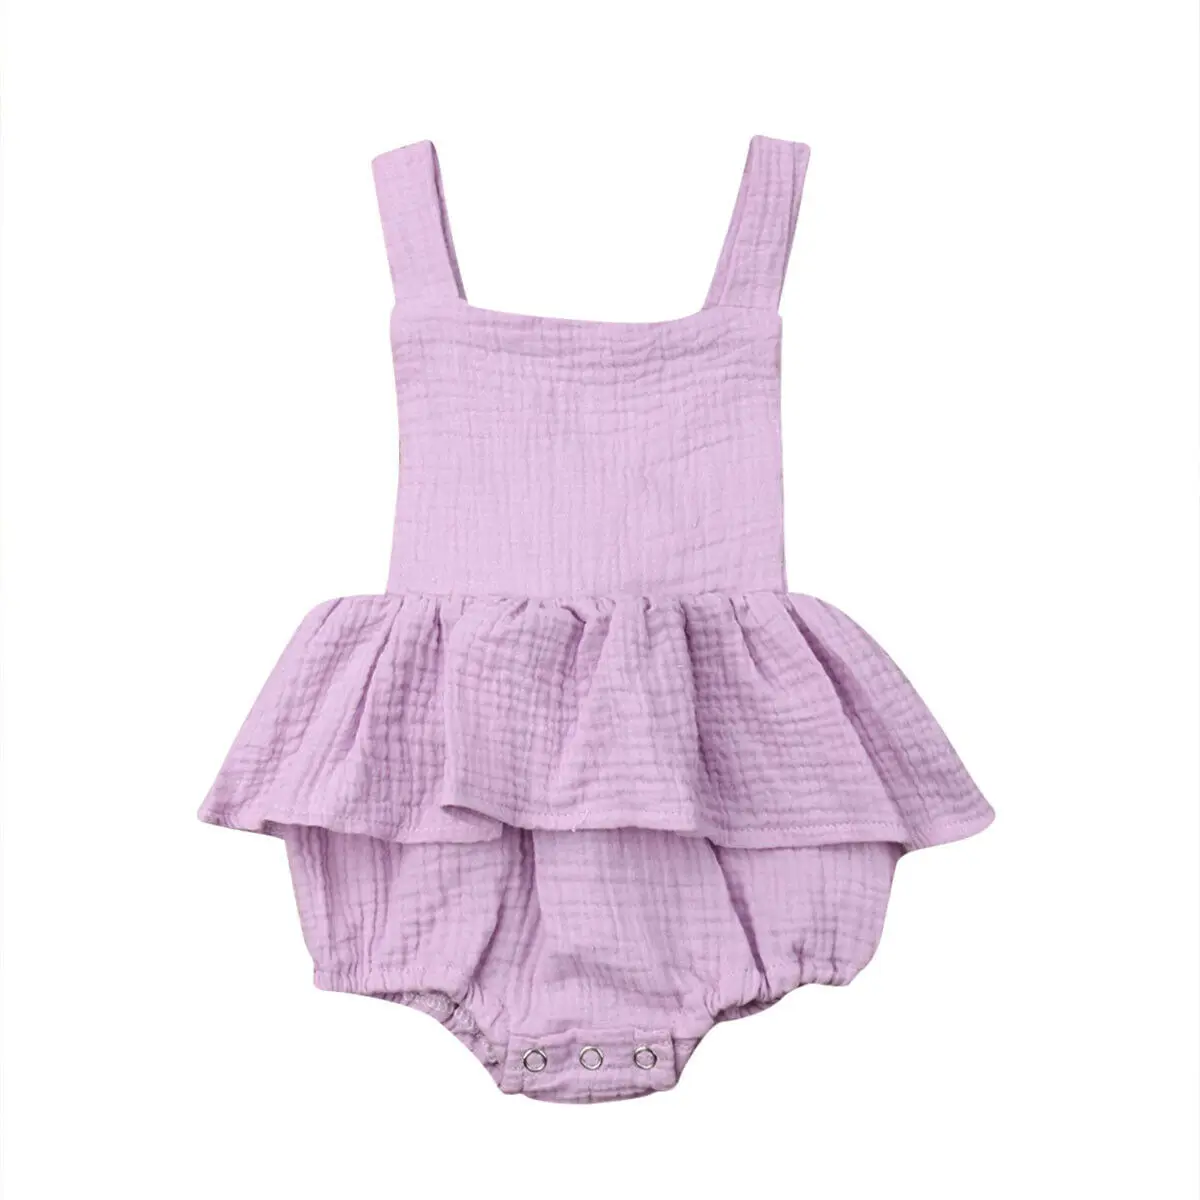 Г. Детская летняя одежда прочный комбинезон для новорожденных девочек хлопковые комбинезоны летний костюм с открытой спиной с оборками для детей от 0 до 24 месяцев - Цвет: Фиолетовый